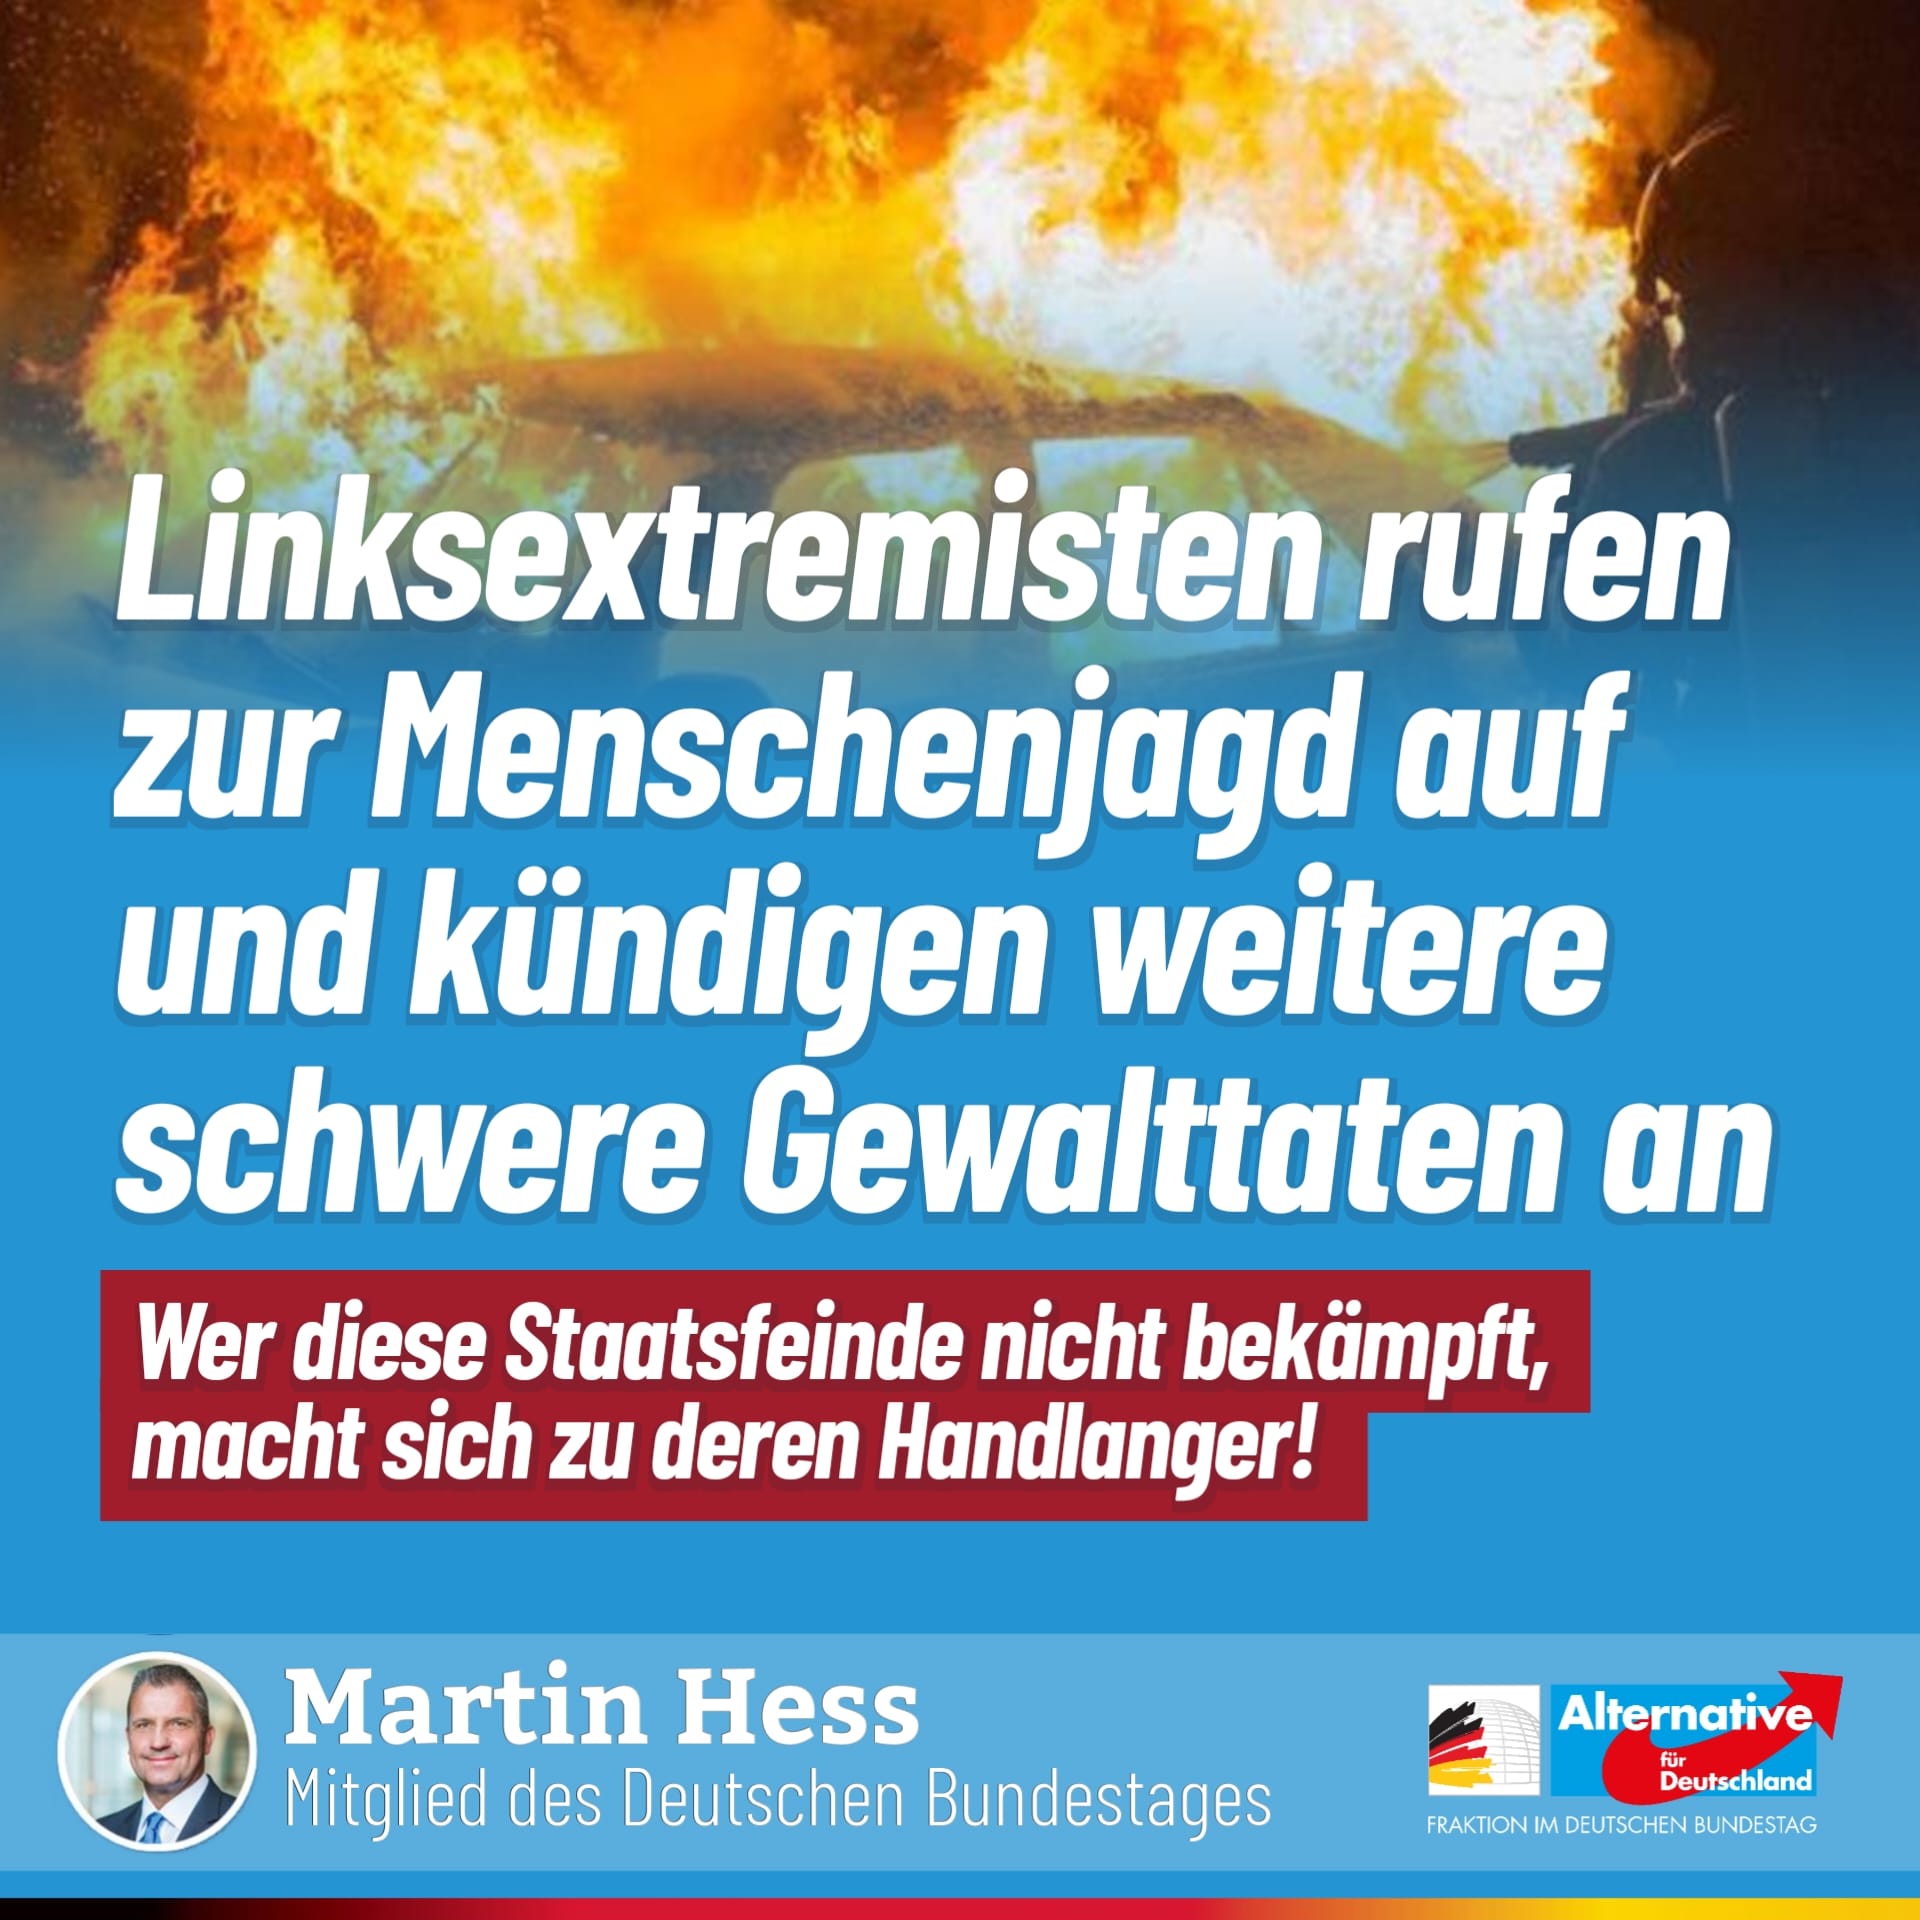 Terror Linksterror Faeser Innenministerin Bundestag AfD Martin Martin Hess Hess